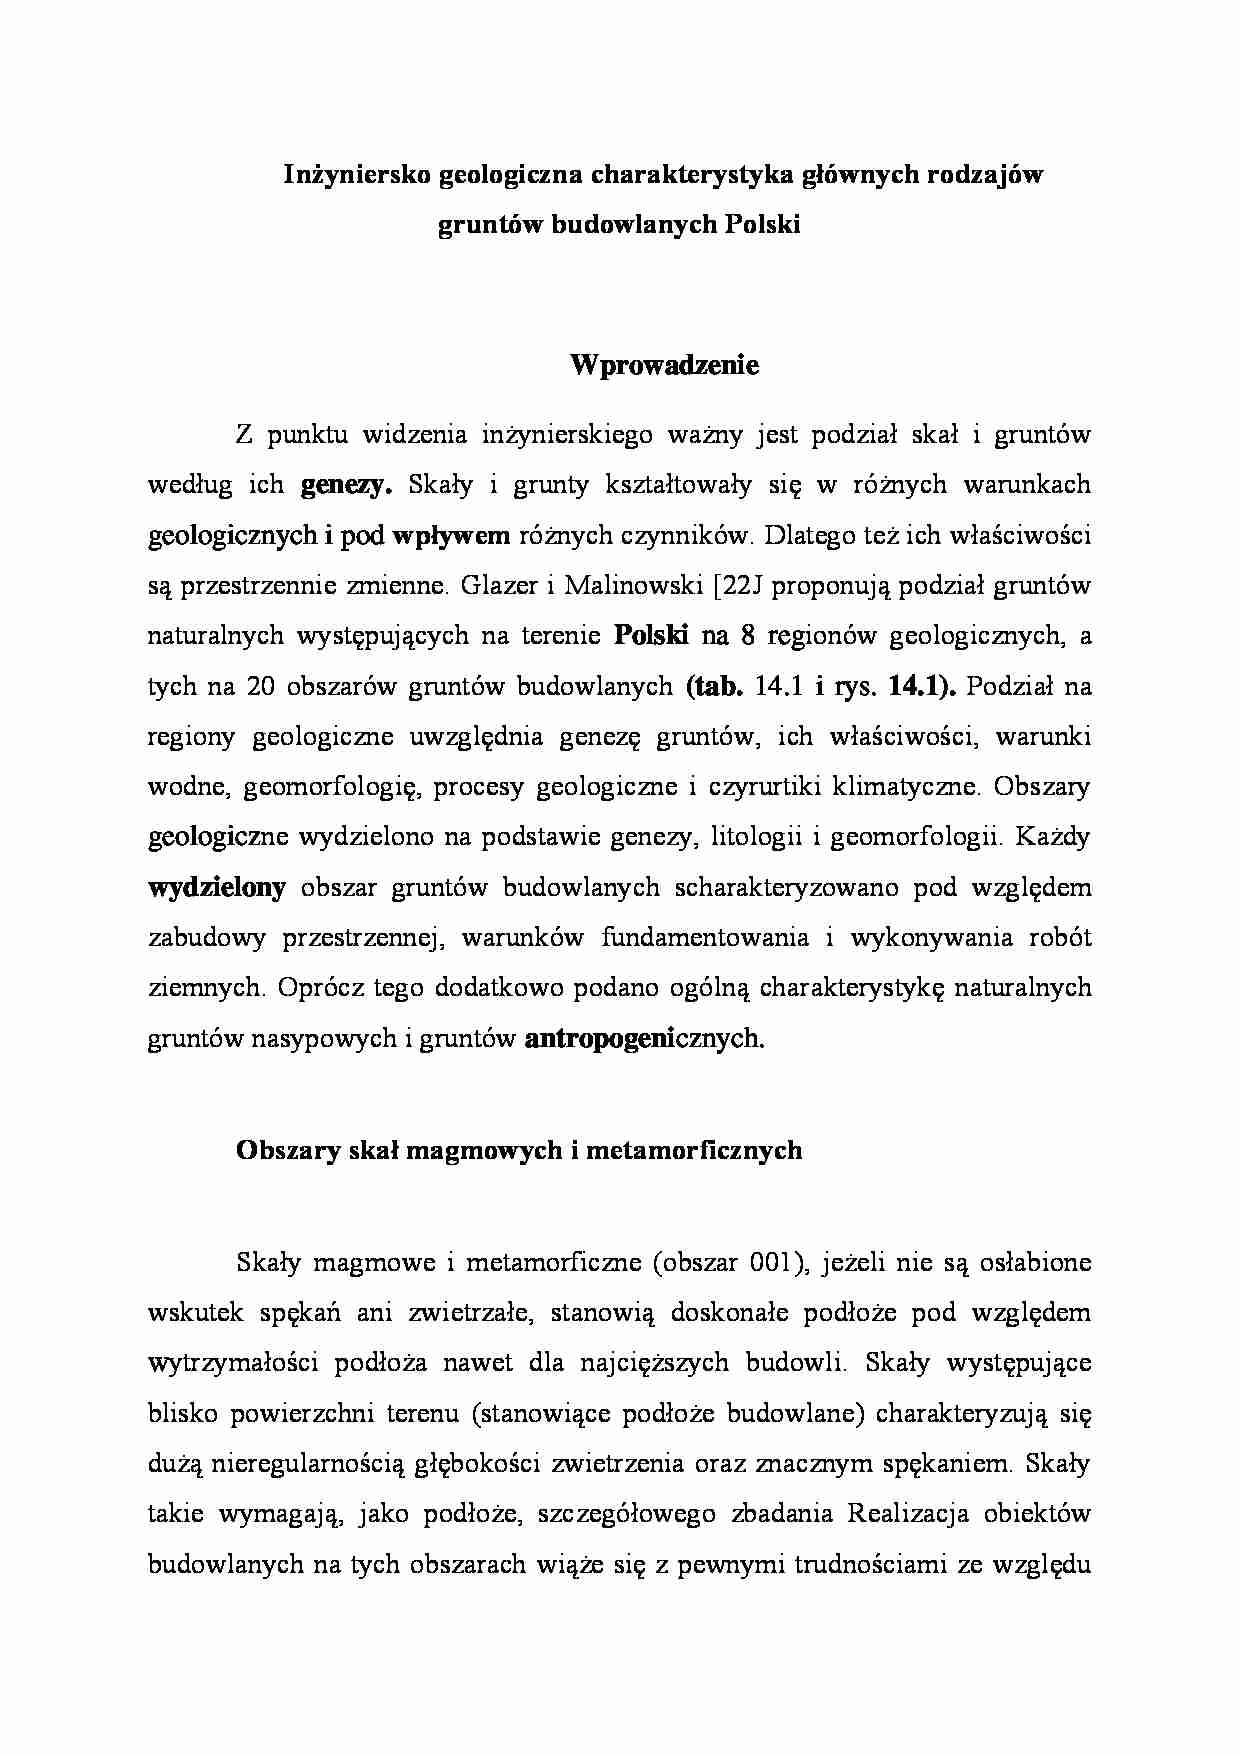 Inżyniersko-geologiczna charakterystyka głównych rodzajów gruntów budowlanych Polski - wykład - strona 1